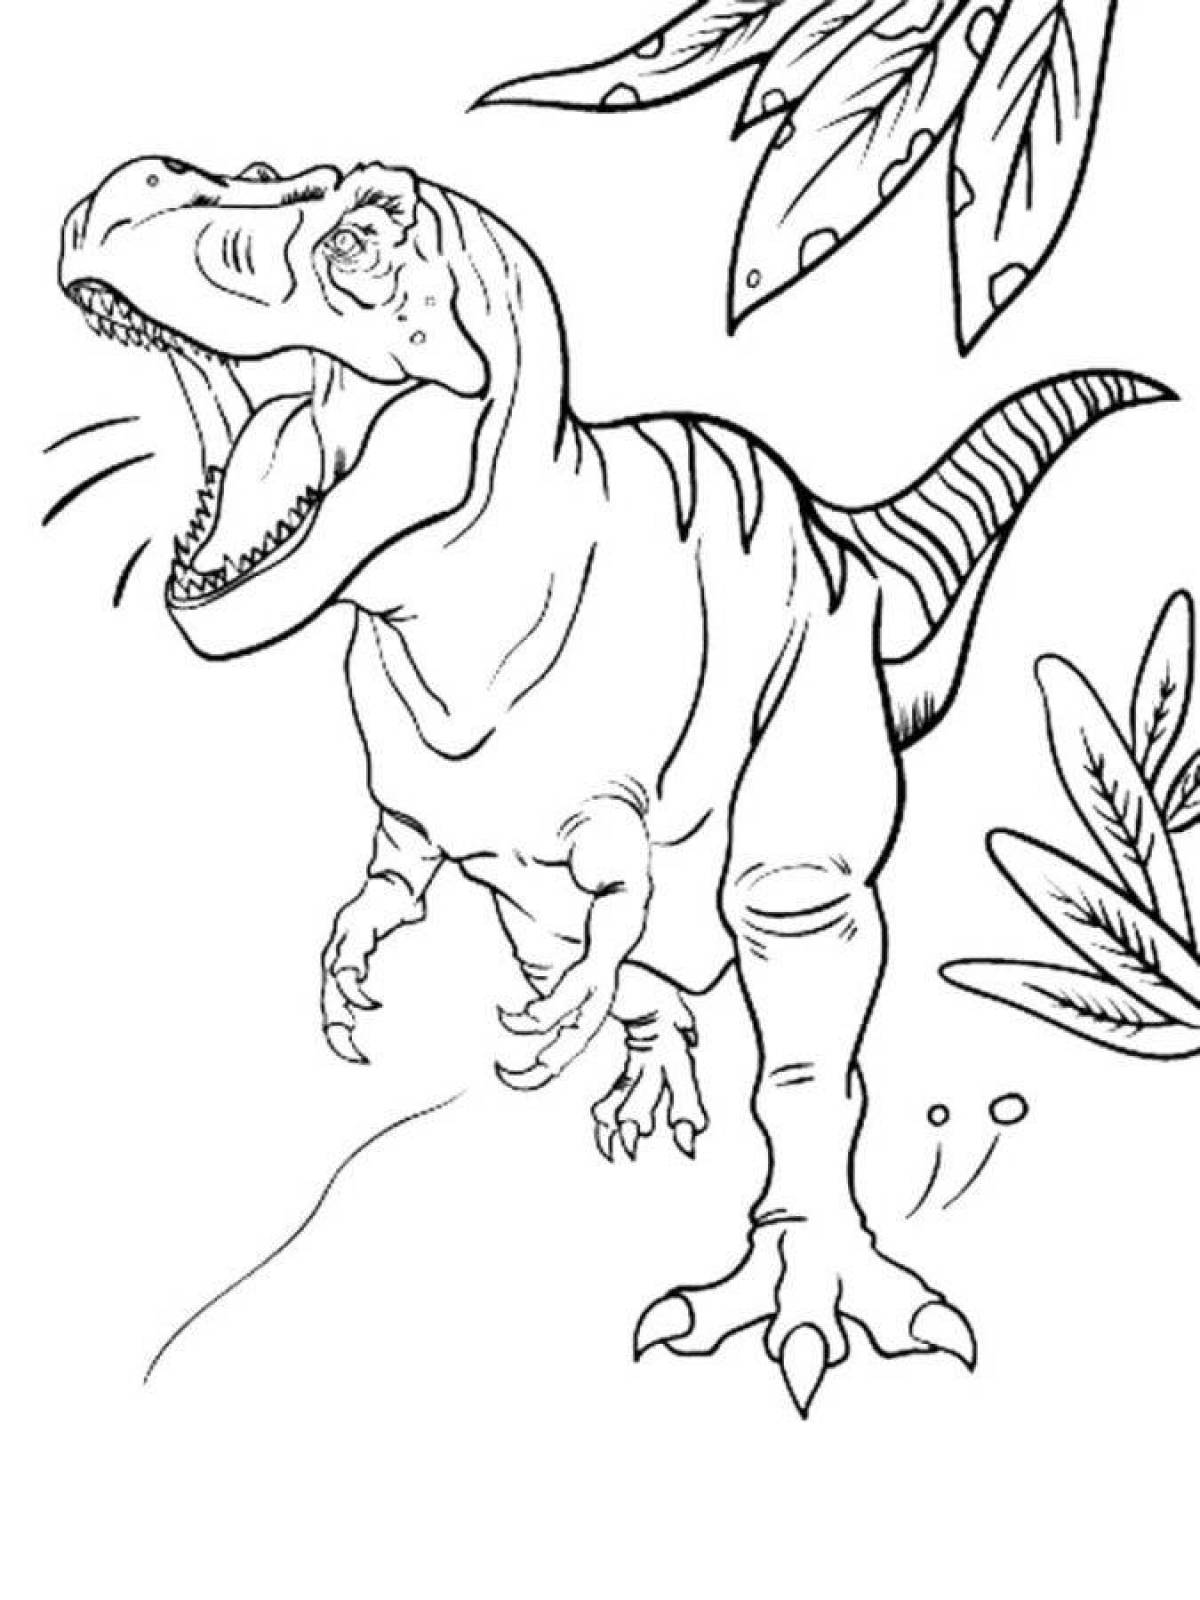 Amazing tyrannosaurus rex coloring book